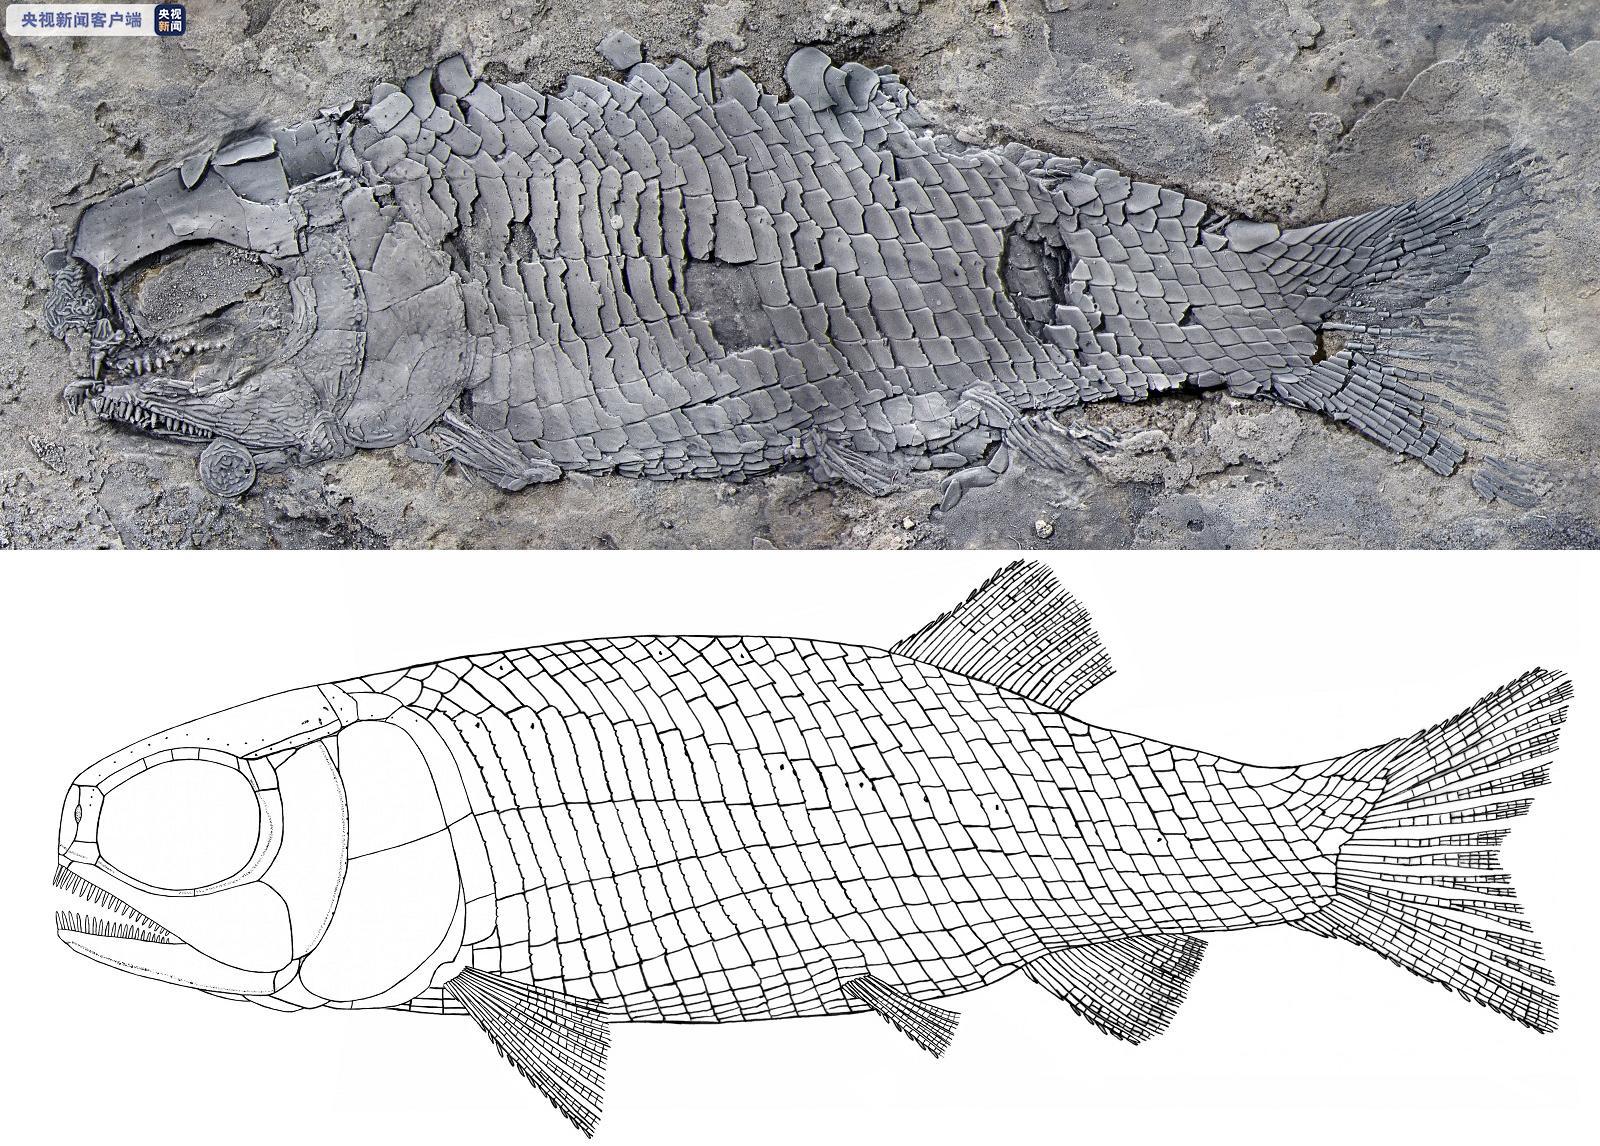 来看看距今约2 44亿年的鱼长啥样 云南发现世界最古老肋鳞裂齿鱼类